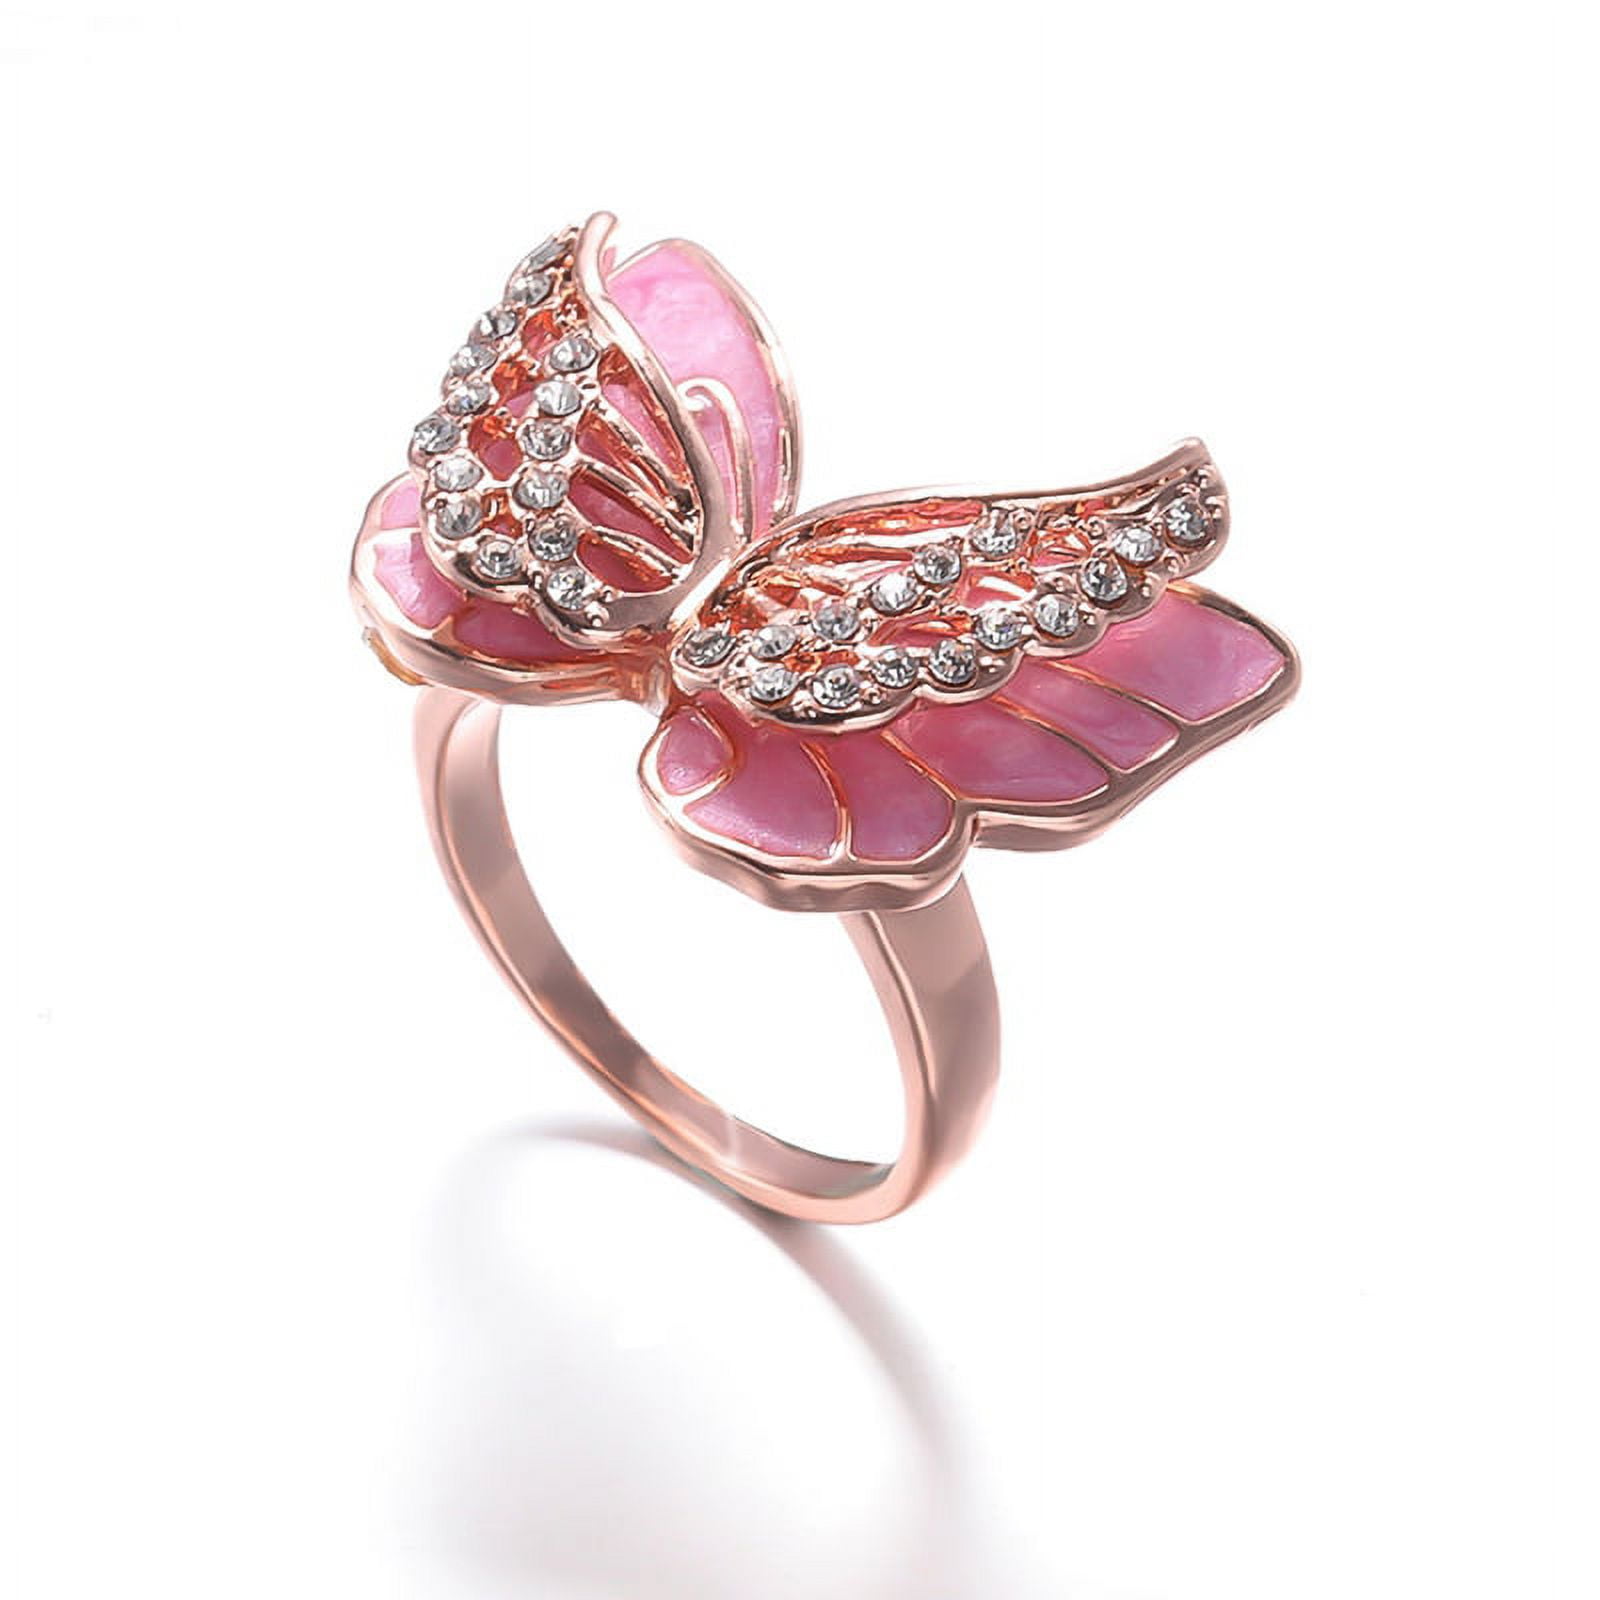 Gucci Mane gifts Keyshia Ka'oir new 60-carat engagement ring